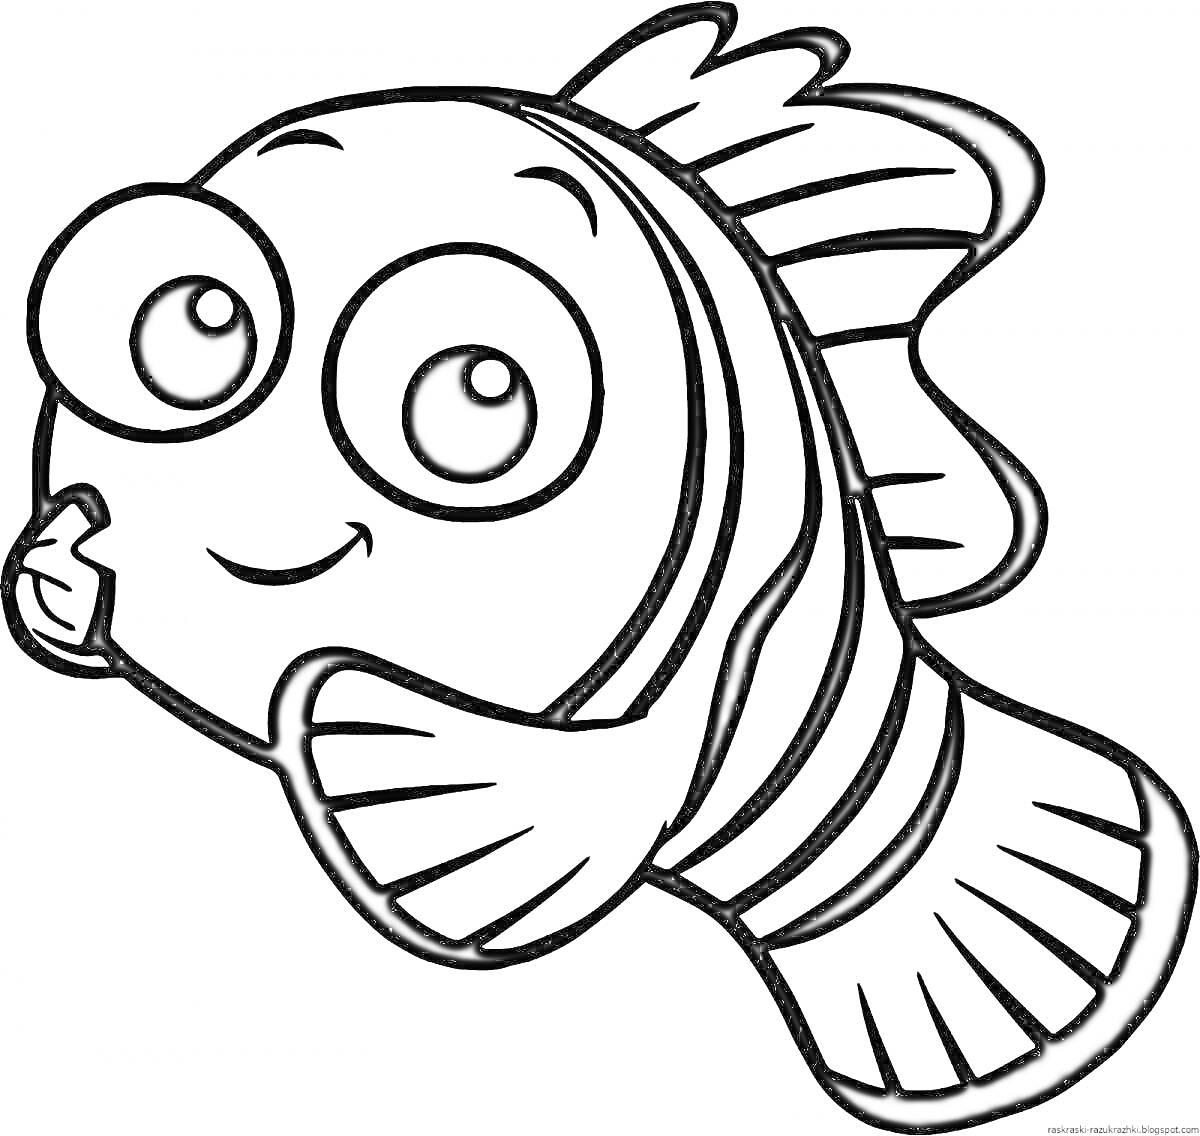 Раскраска Рыба с большими глазами, плавниками, радужкой и полосками на теле